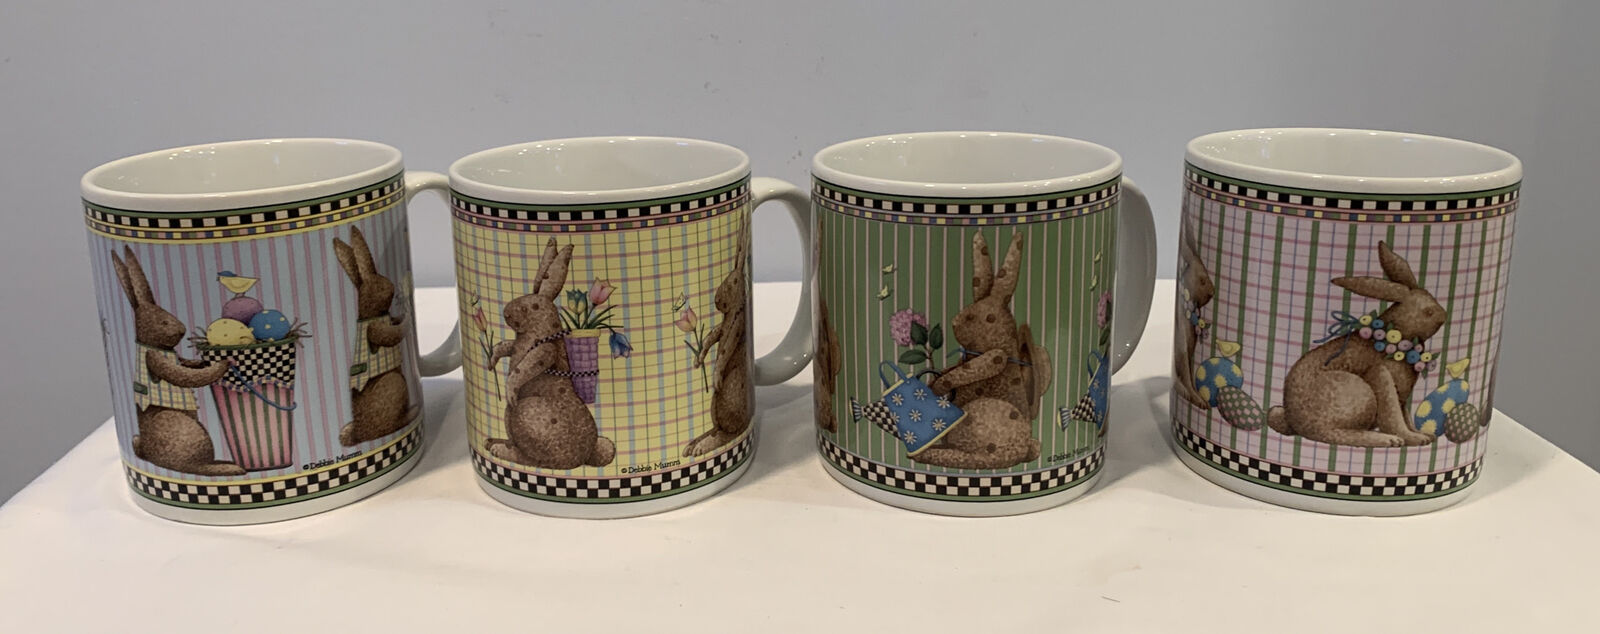 1998 Debbie Mumm Easter Bunny Set of 4 Coffee Mugs Spring Is In The Air Sakura